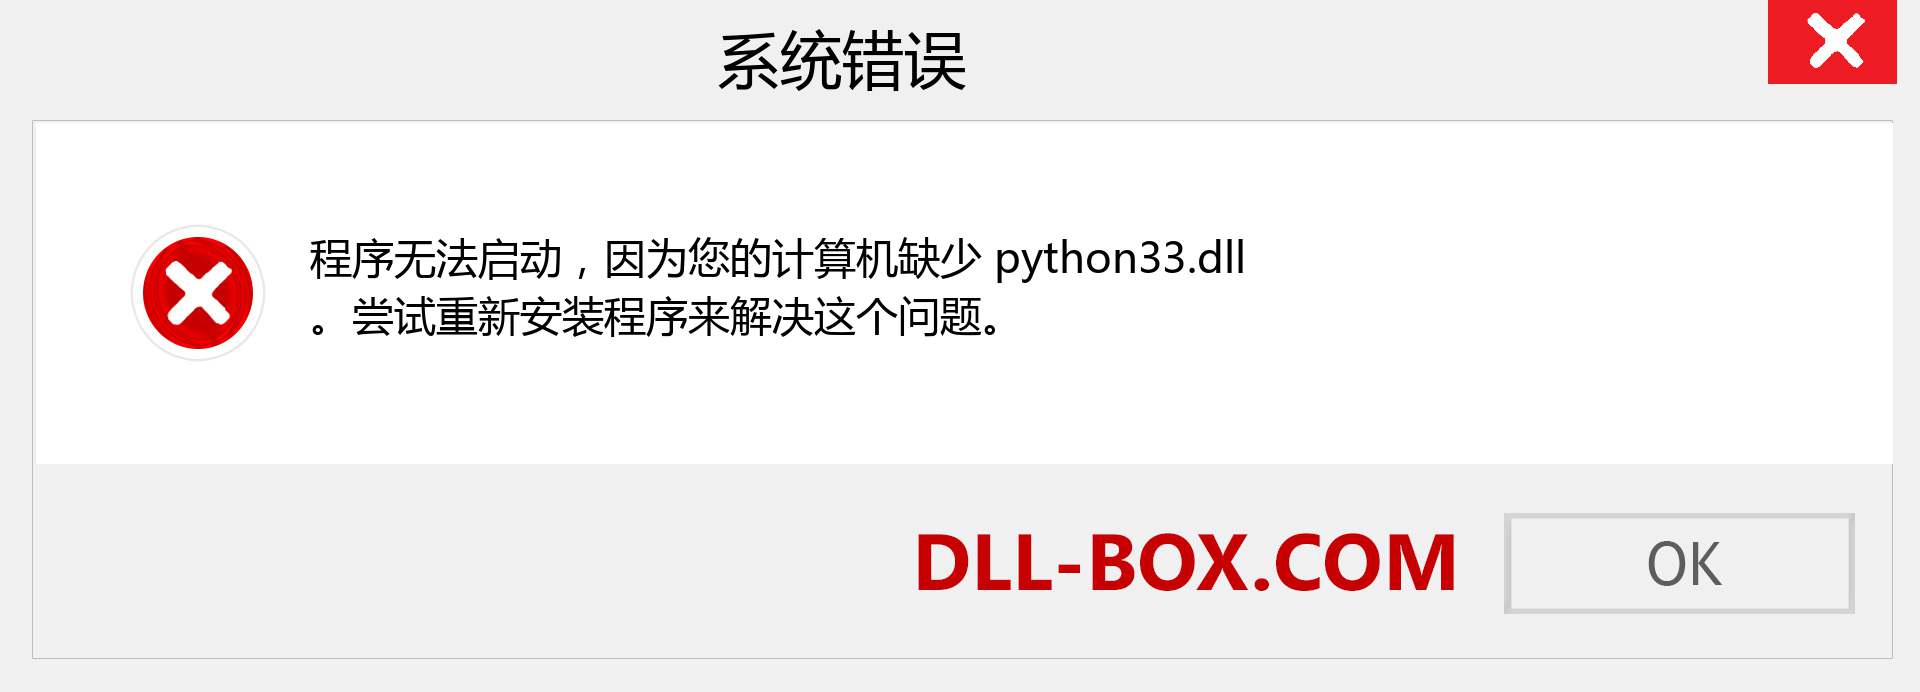 python33.dll 文件丢失？。 适用于 Windows 7、8、10 的下载 - 修复 Windows、照片、图像上的 python33 dll 丢失错误